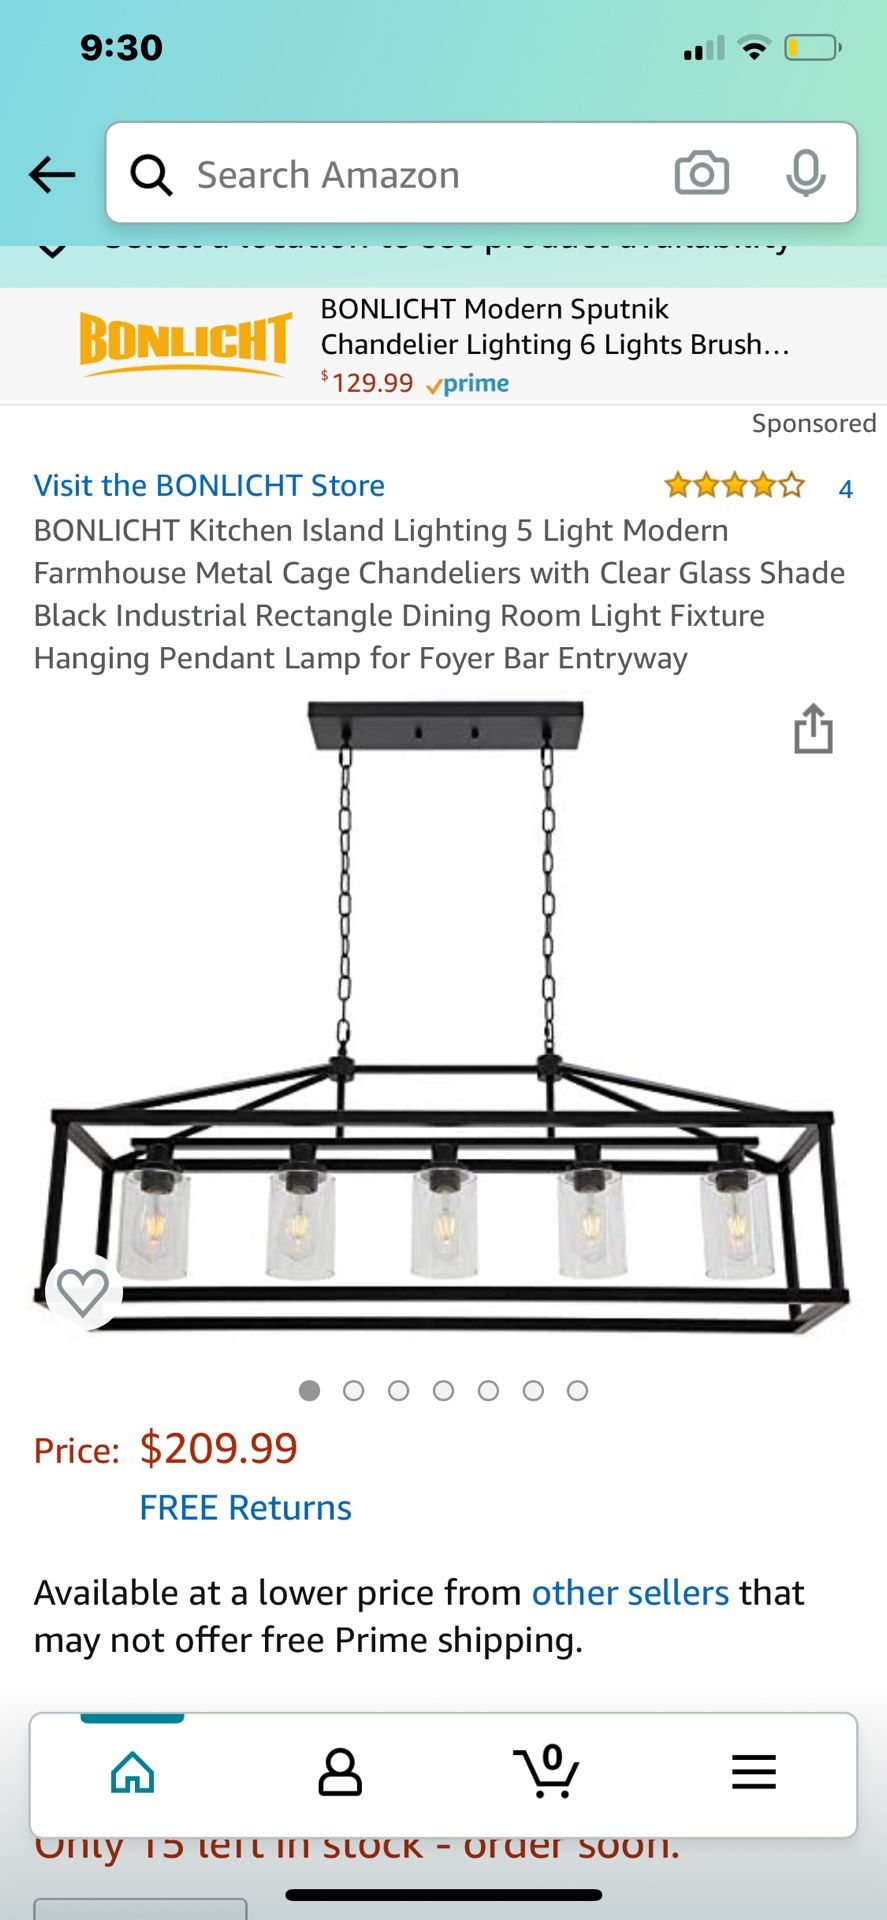 BONLICHT kitchen island lighting/5 lights modern farm house metal chandelier